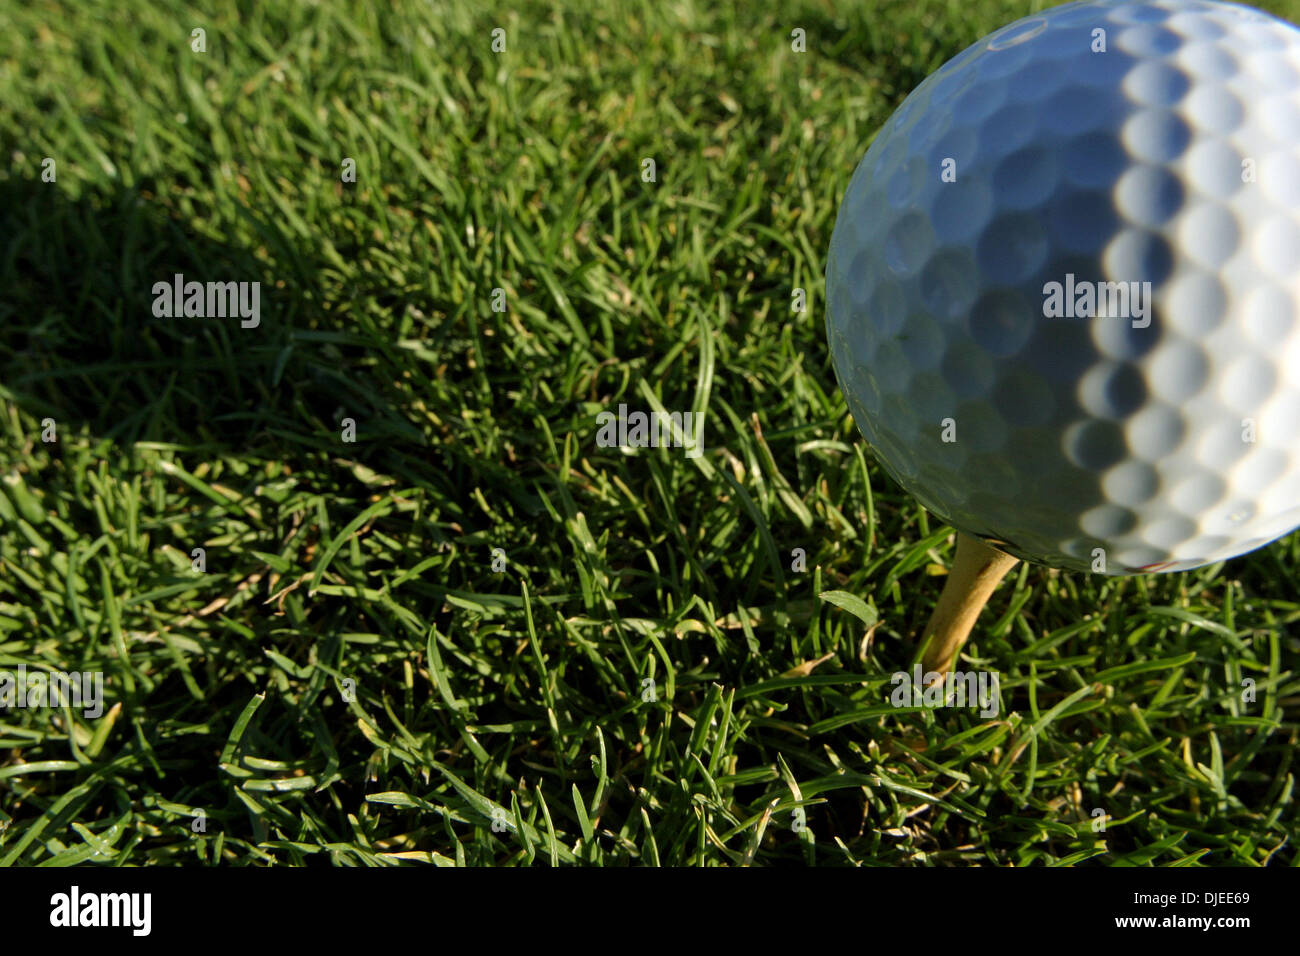 Sep 01, 2004; Los Angeles, Kalifornien, USA; Ein Golfball und Tee in einem der vielen driving Ranges in Südkalifornien. Spiel Golf, Golfschläger, Putter, Golfball, Flagge, Putting-Green. Stockfoto